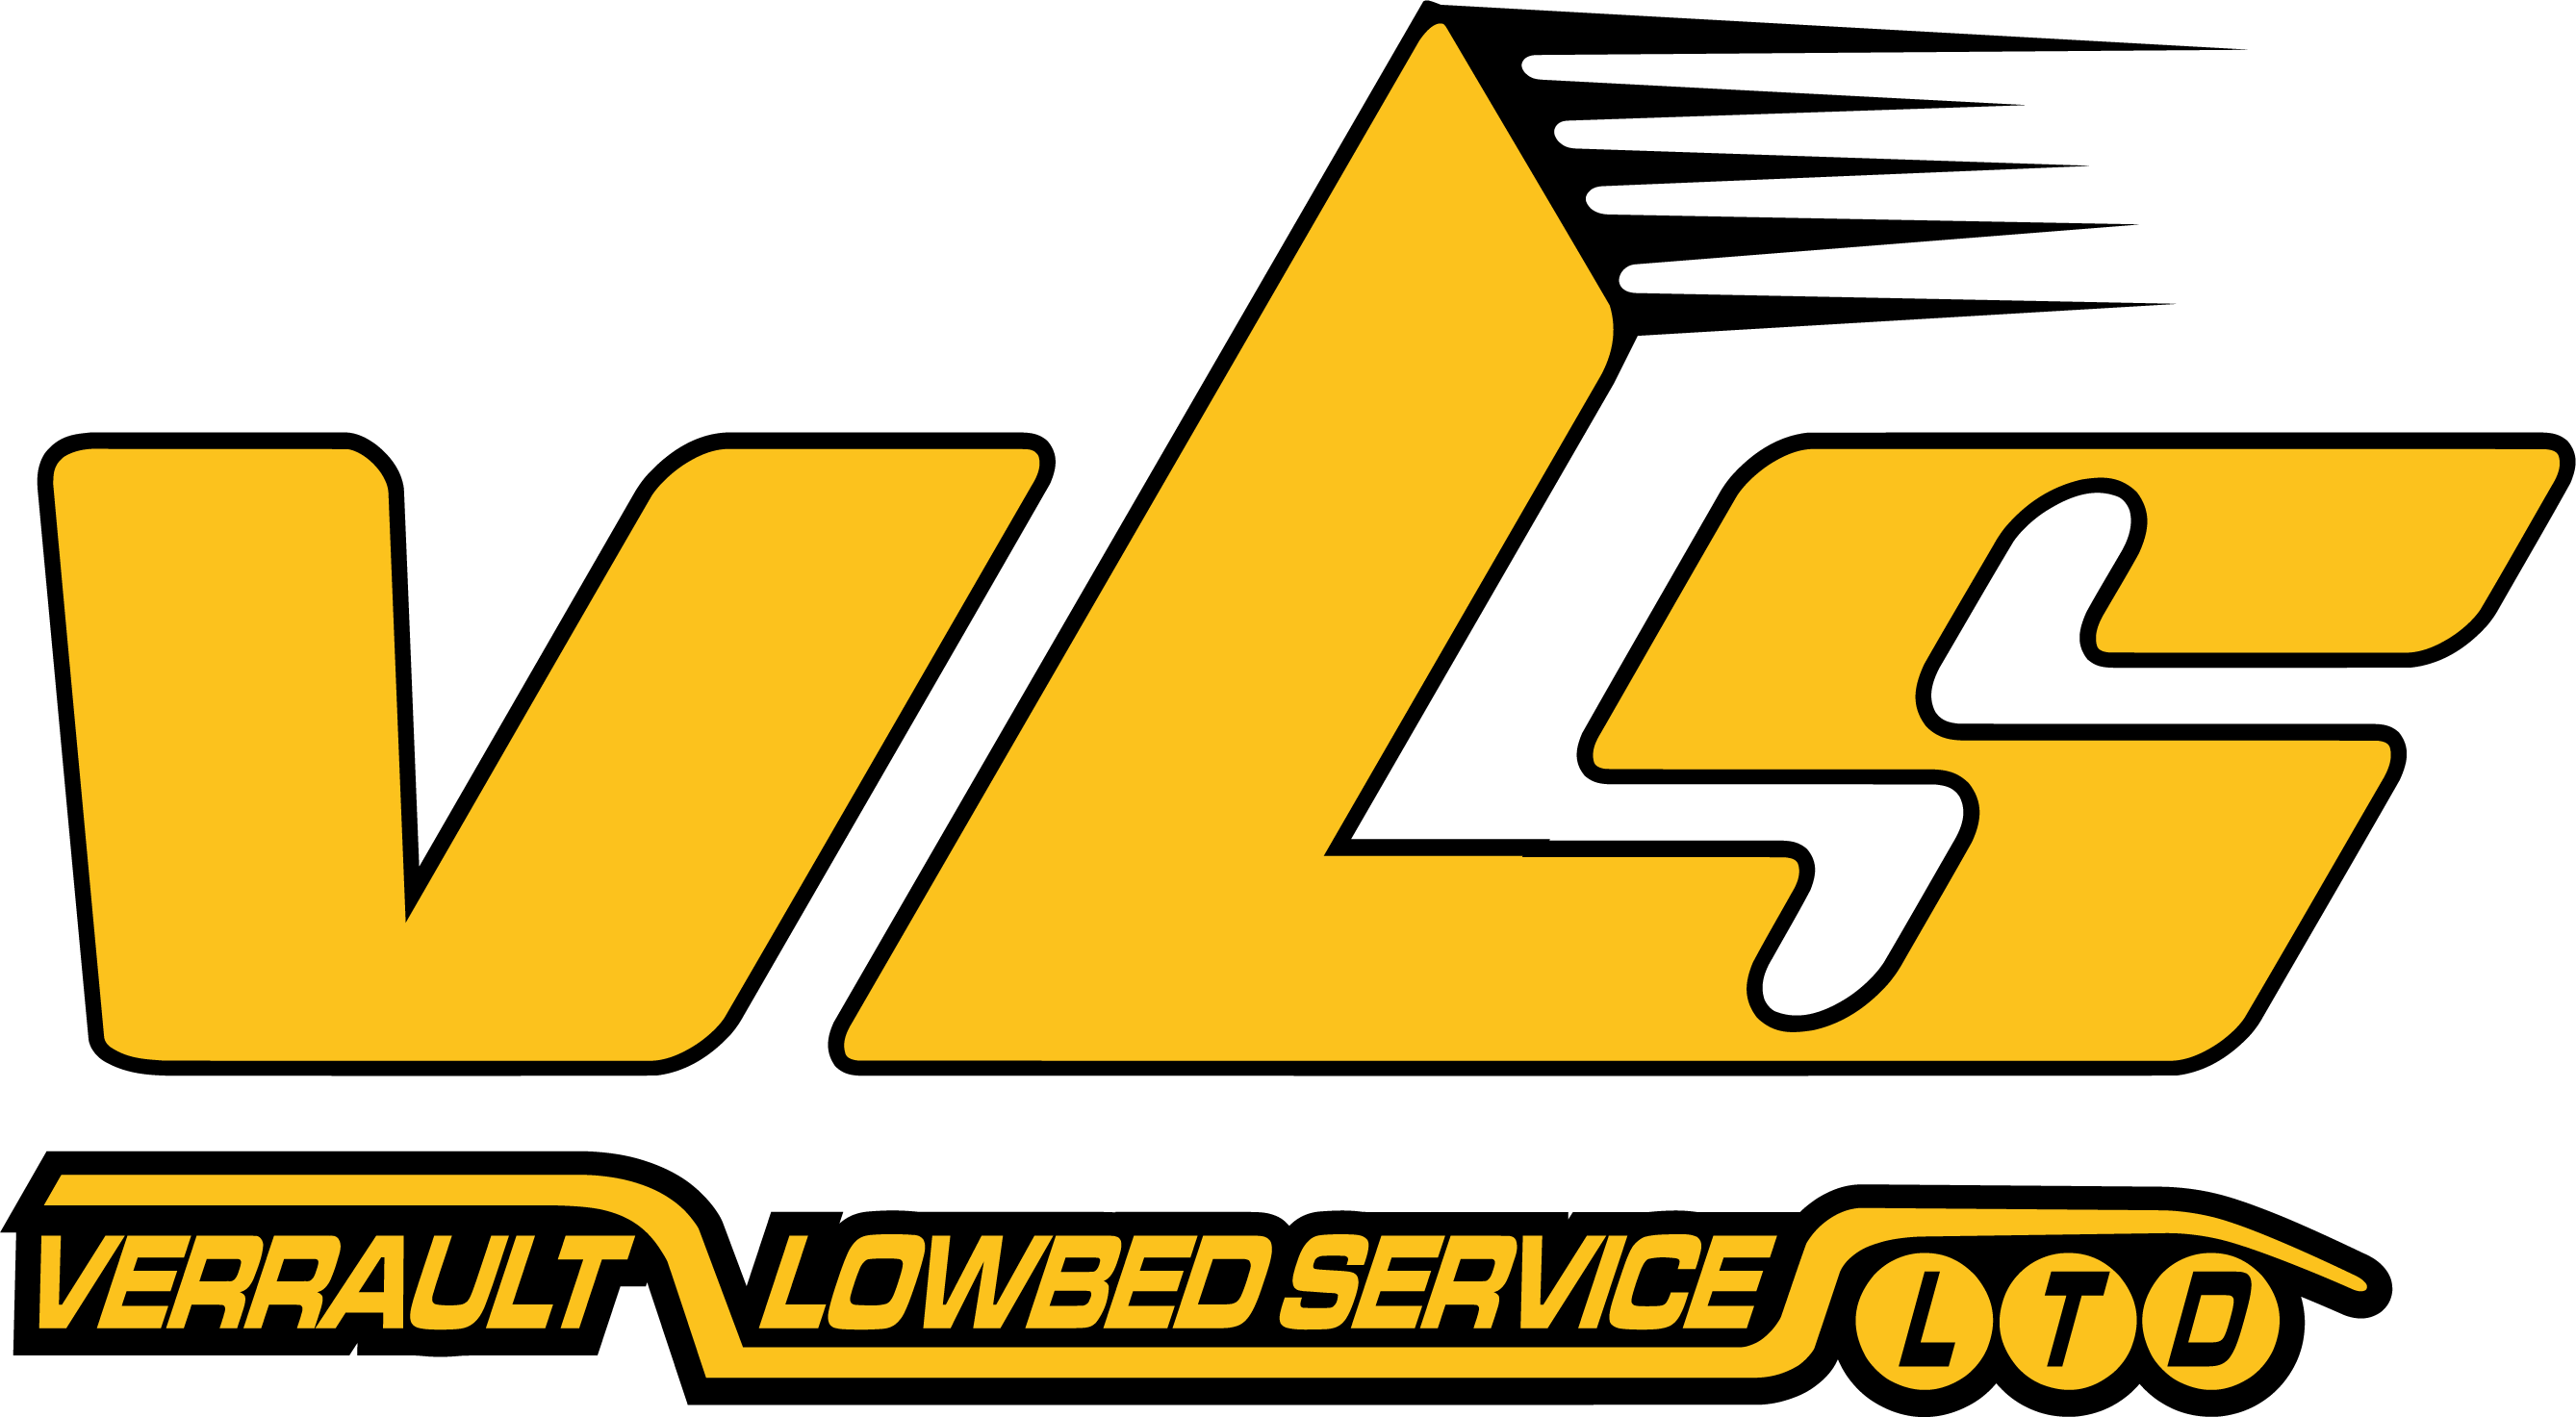 Verrault Lowbed Service logo 